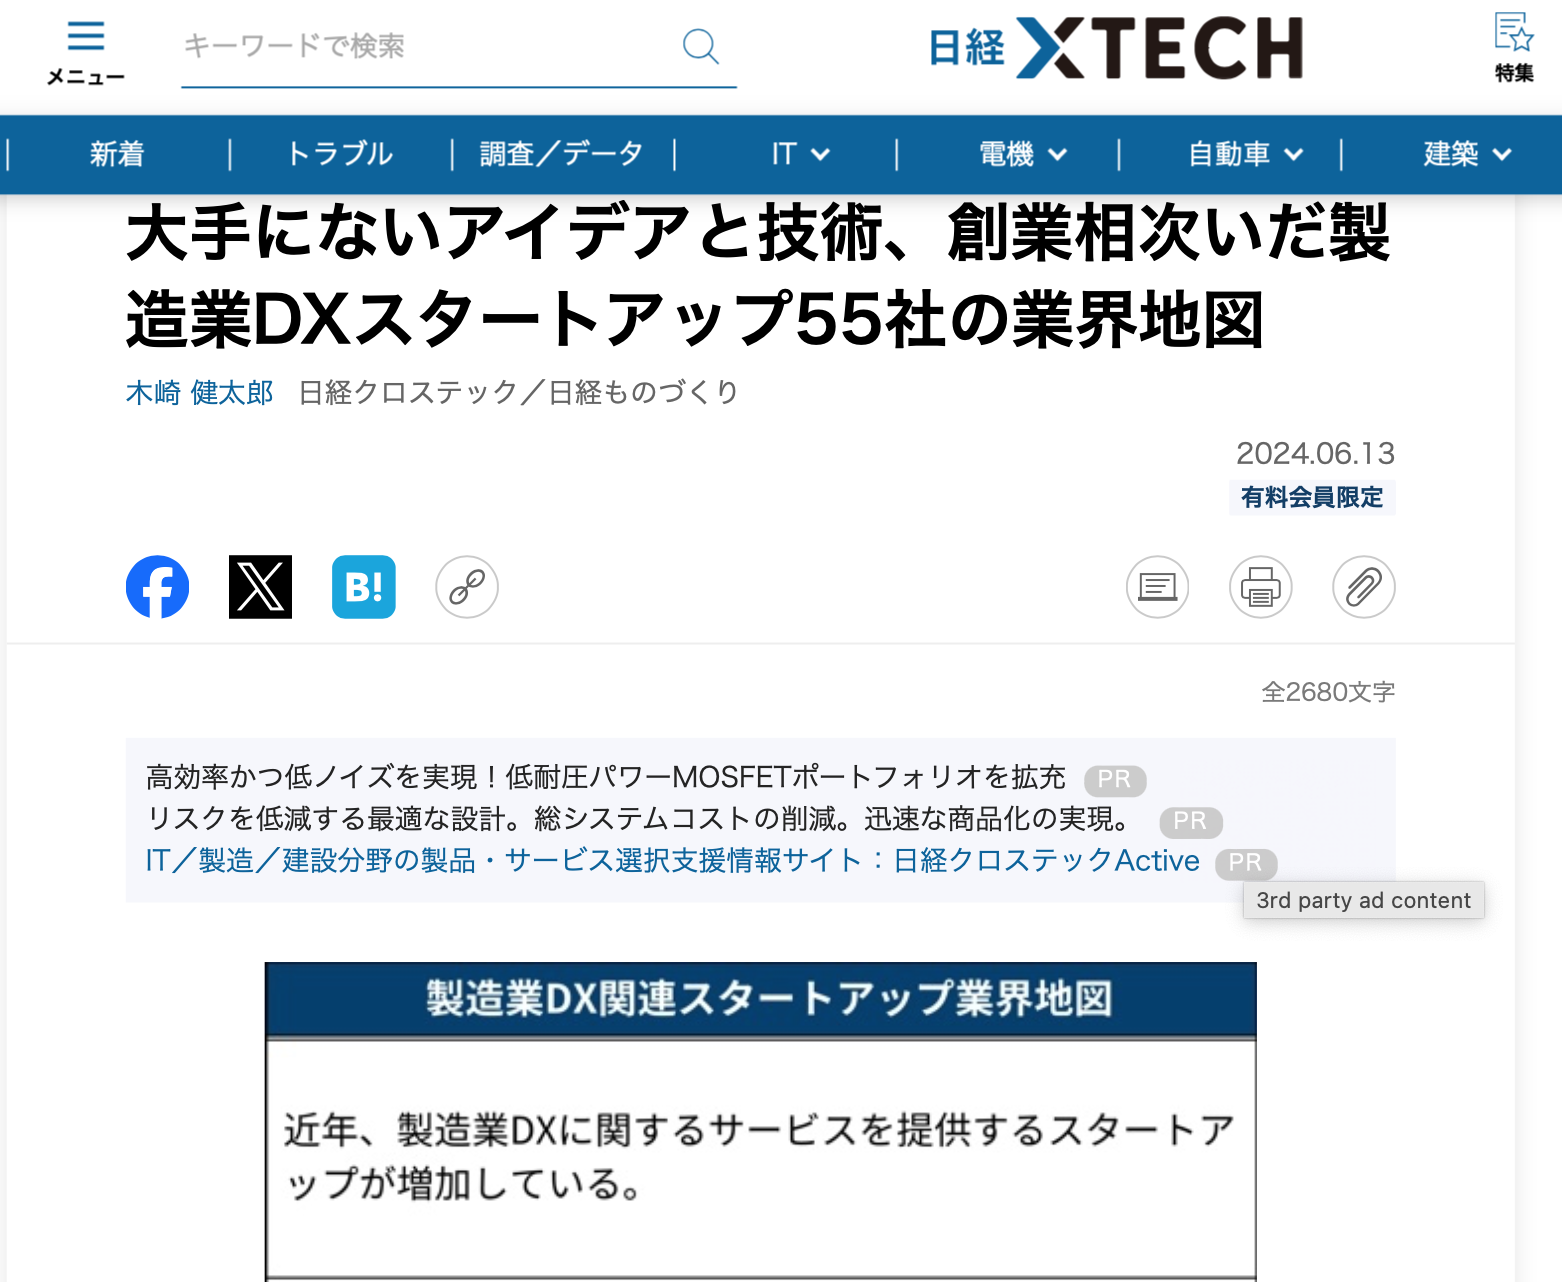 株式会社エムニが日経クロステックの業界地図に製造業DXスタートアップとして掲載